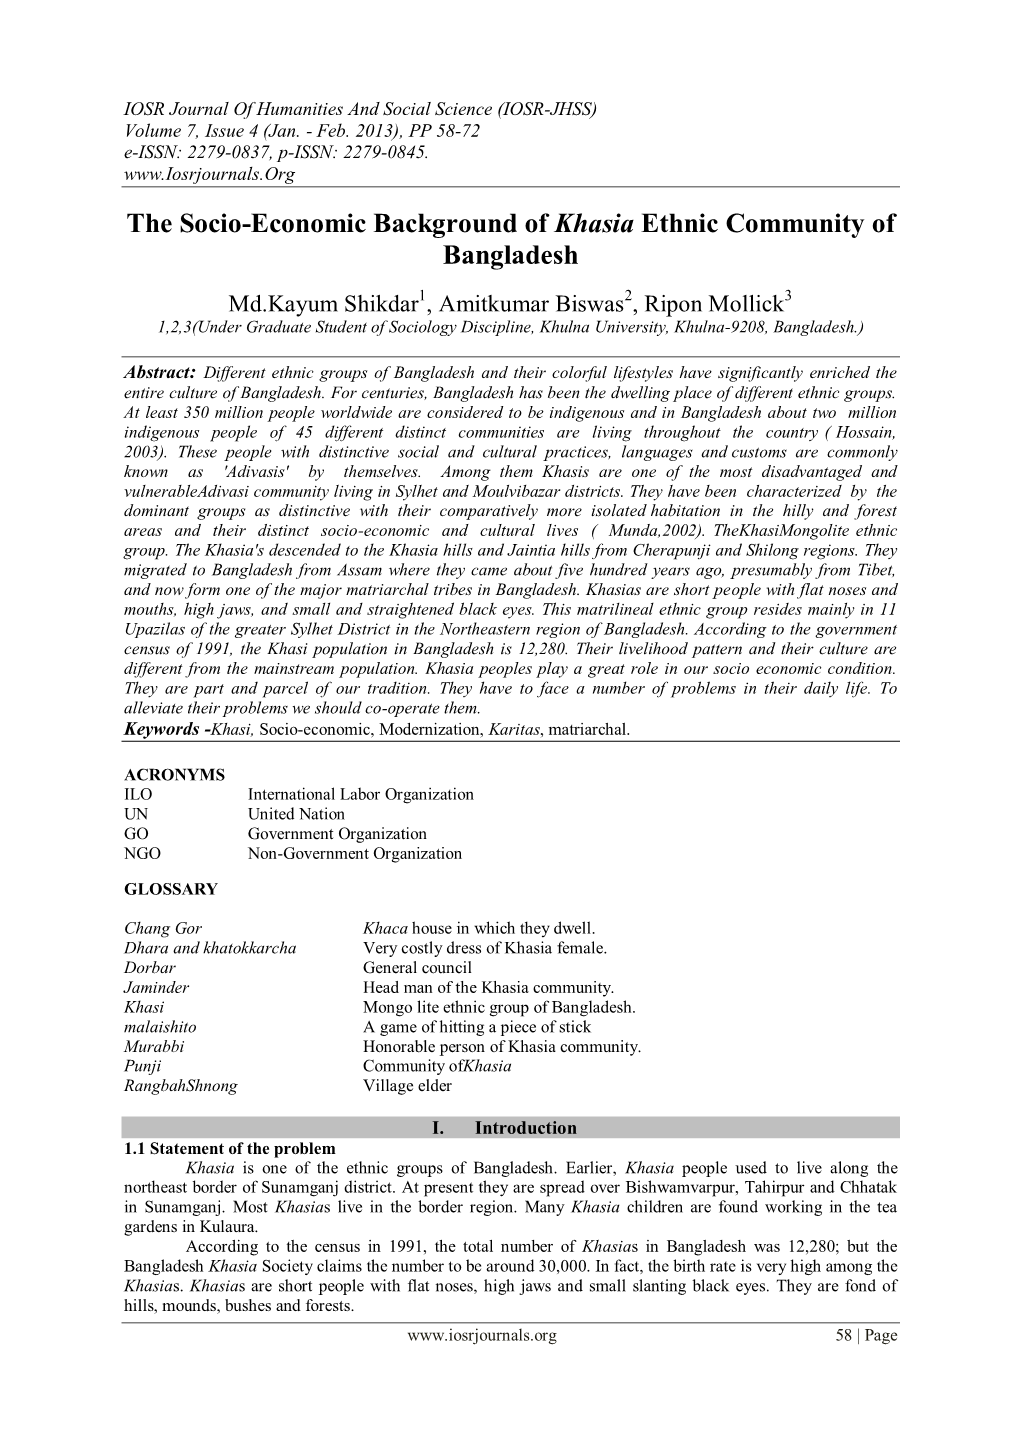 The Socio-Economic Background of Khasia Ethnic Community of Bangladesh